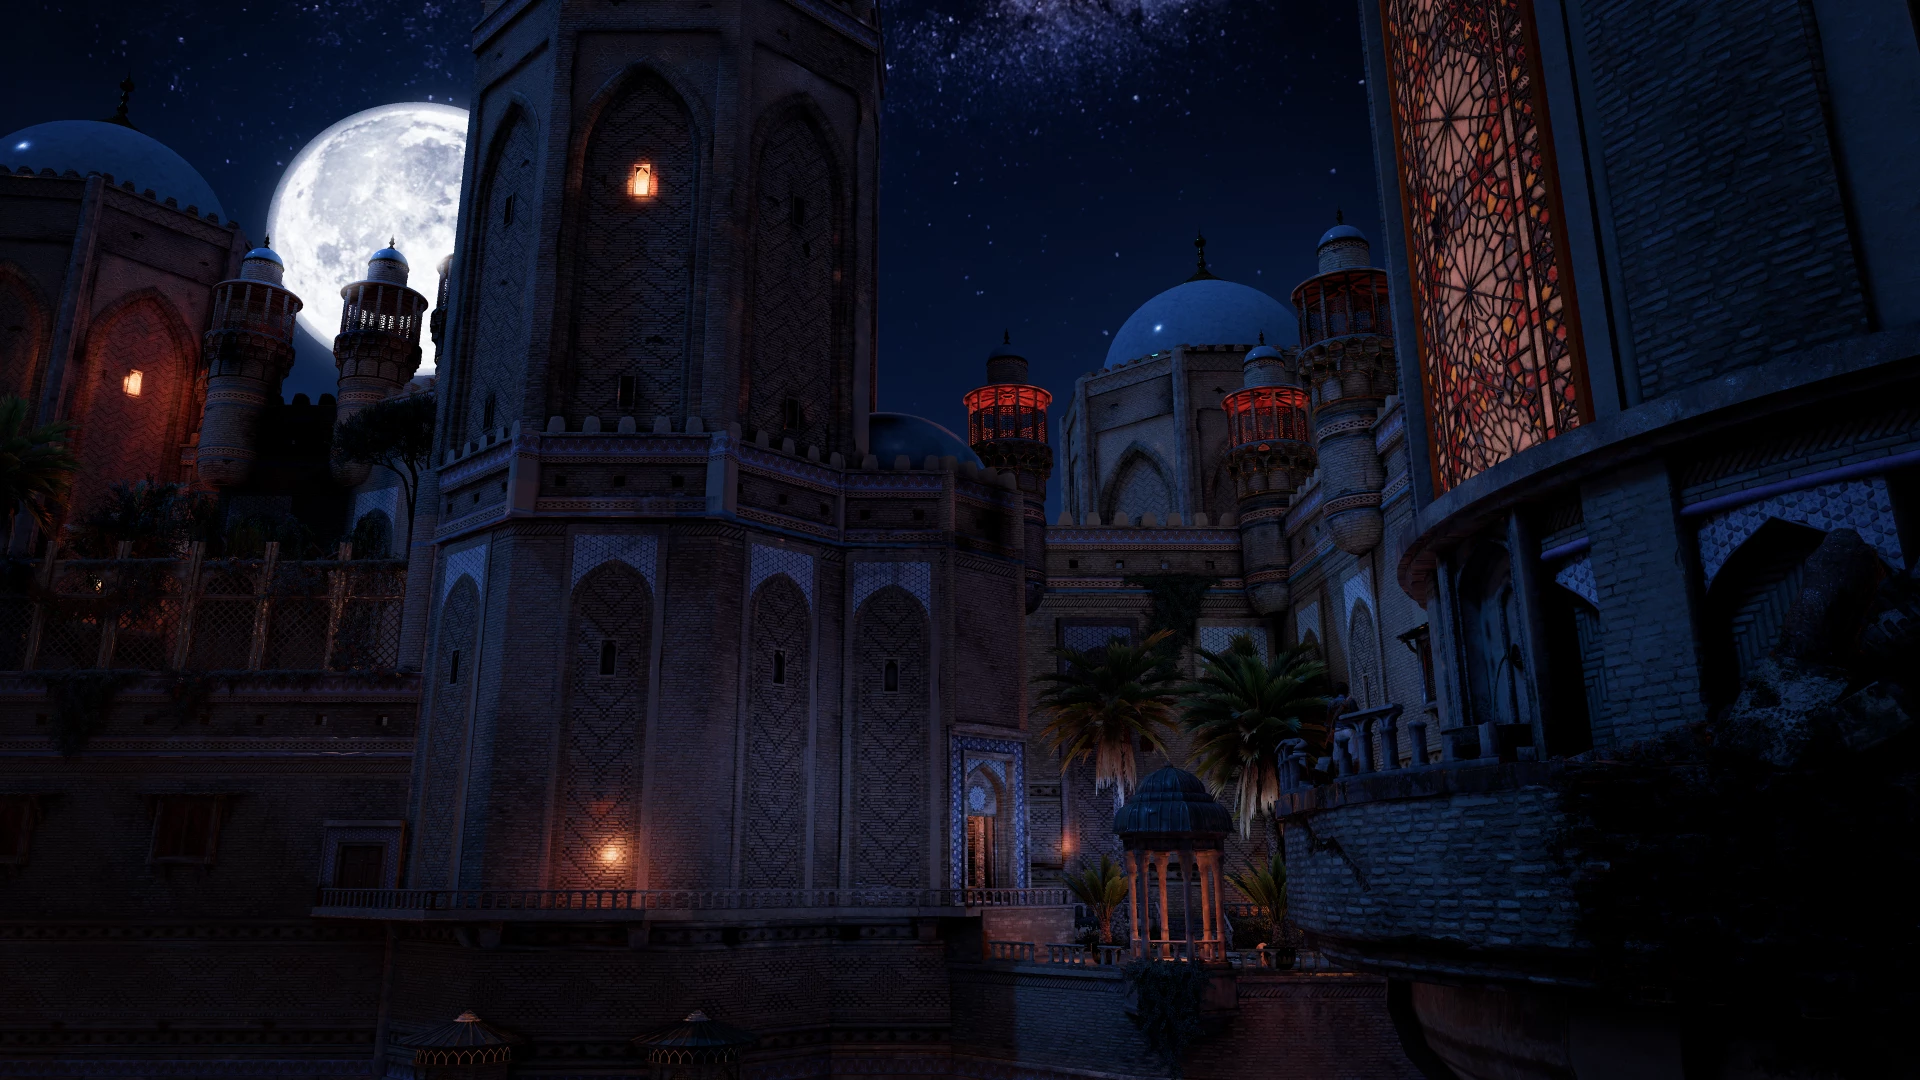 Prince of Persia Sands of Time Remake voor de Xbox One preorder plaatsen op nedgame.nl